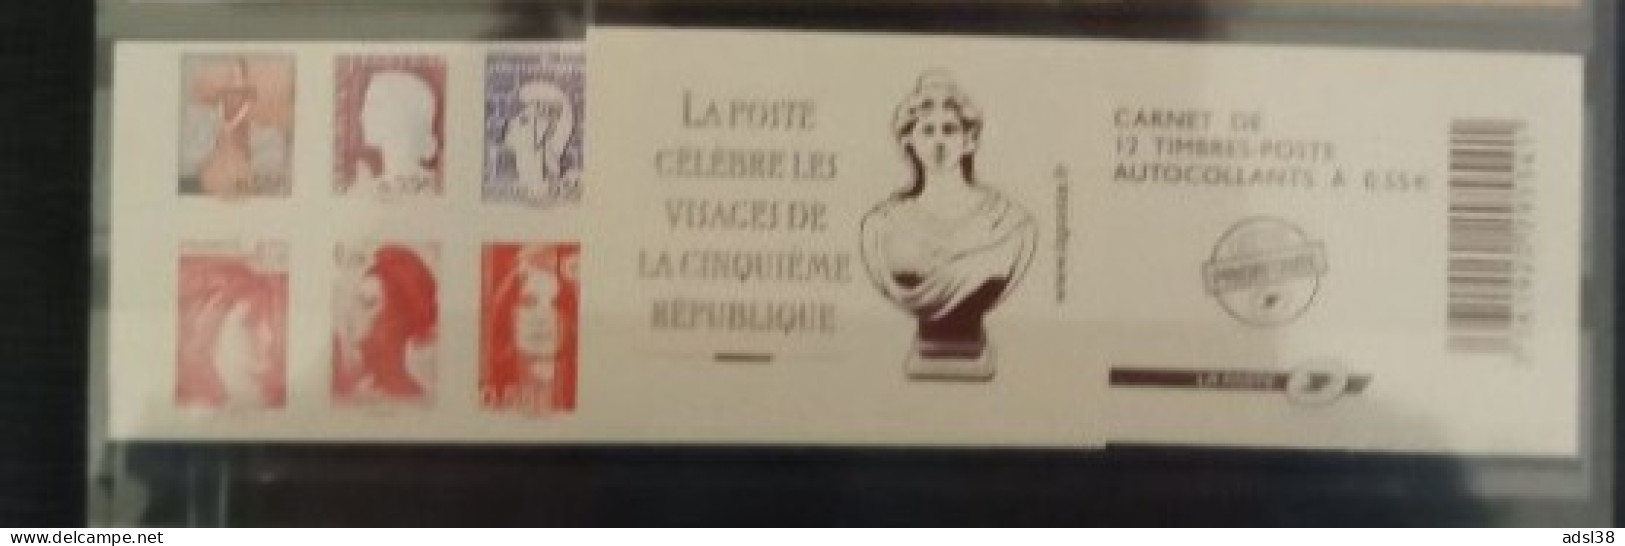 France - Carnet Visages Vème République - 1518 - Commemorrativi